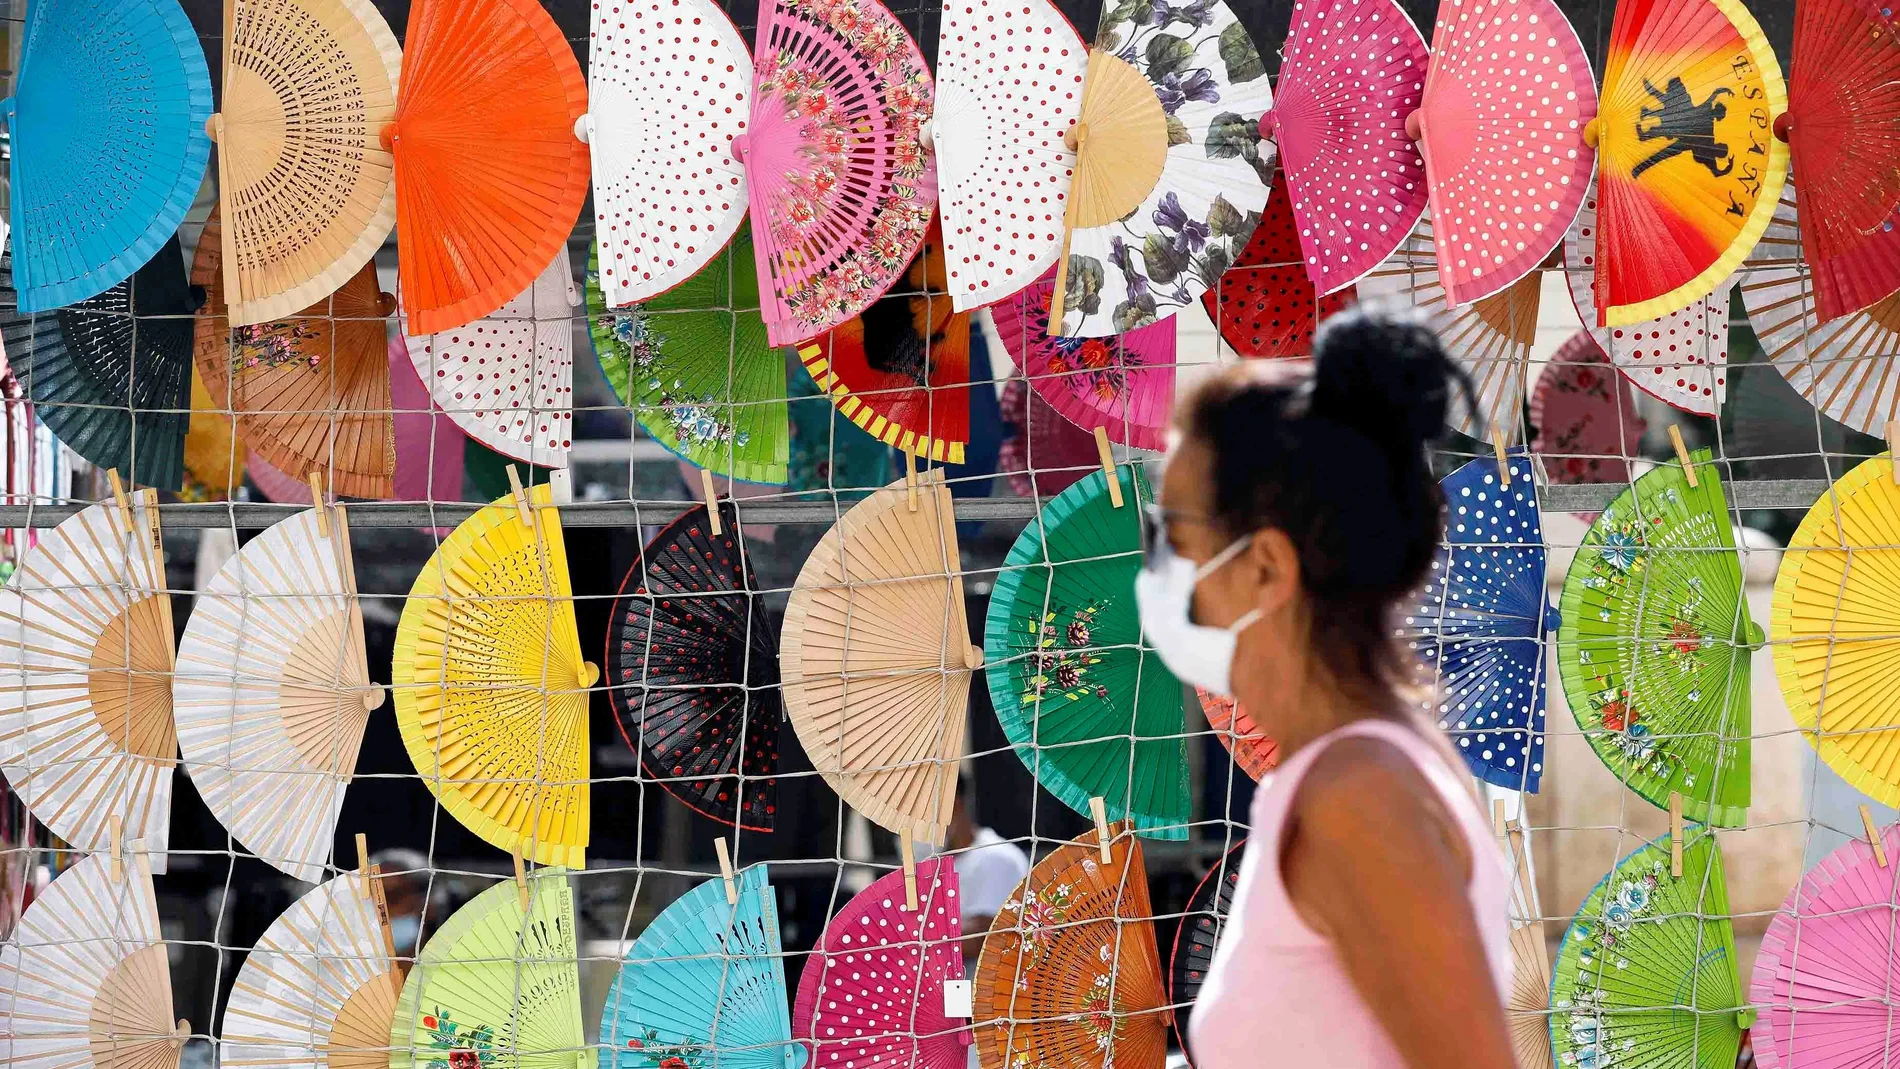 Una persona pasa frente a un puesto del centro de Valencia donde se venden abanicos, este lunes 21 de junio, día en el que da comienzo el verano